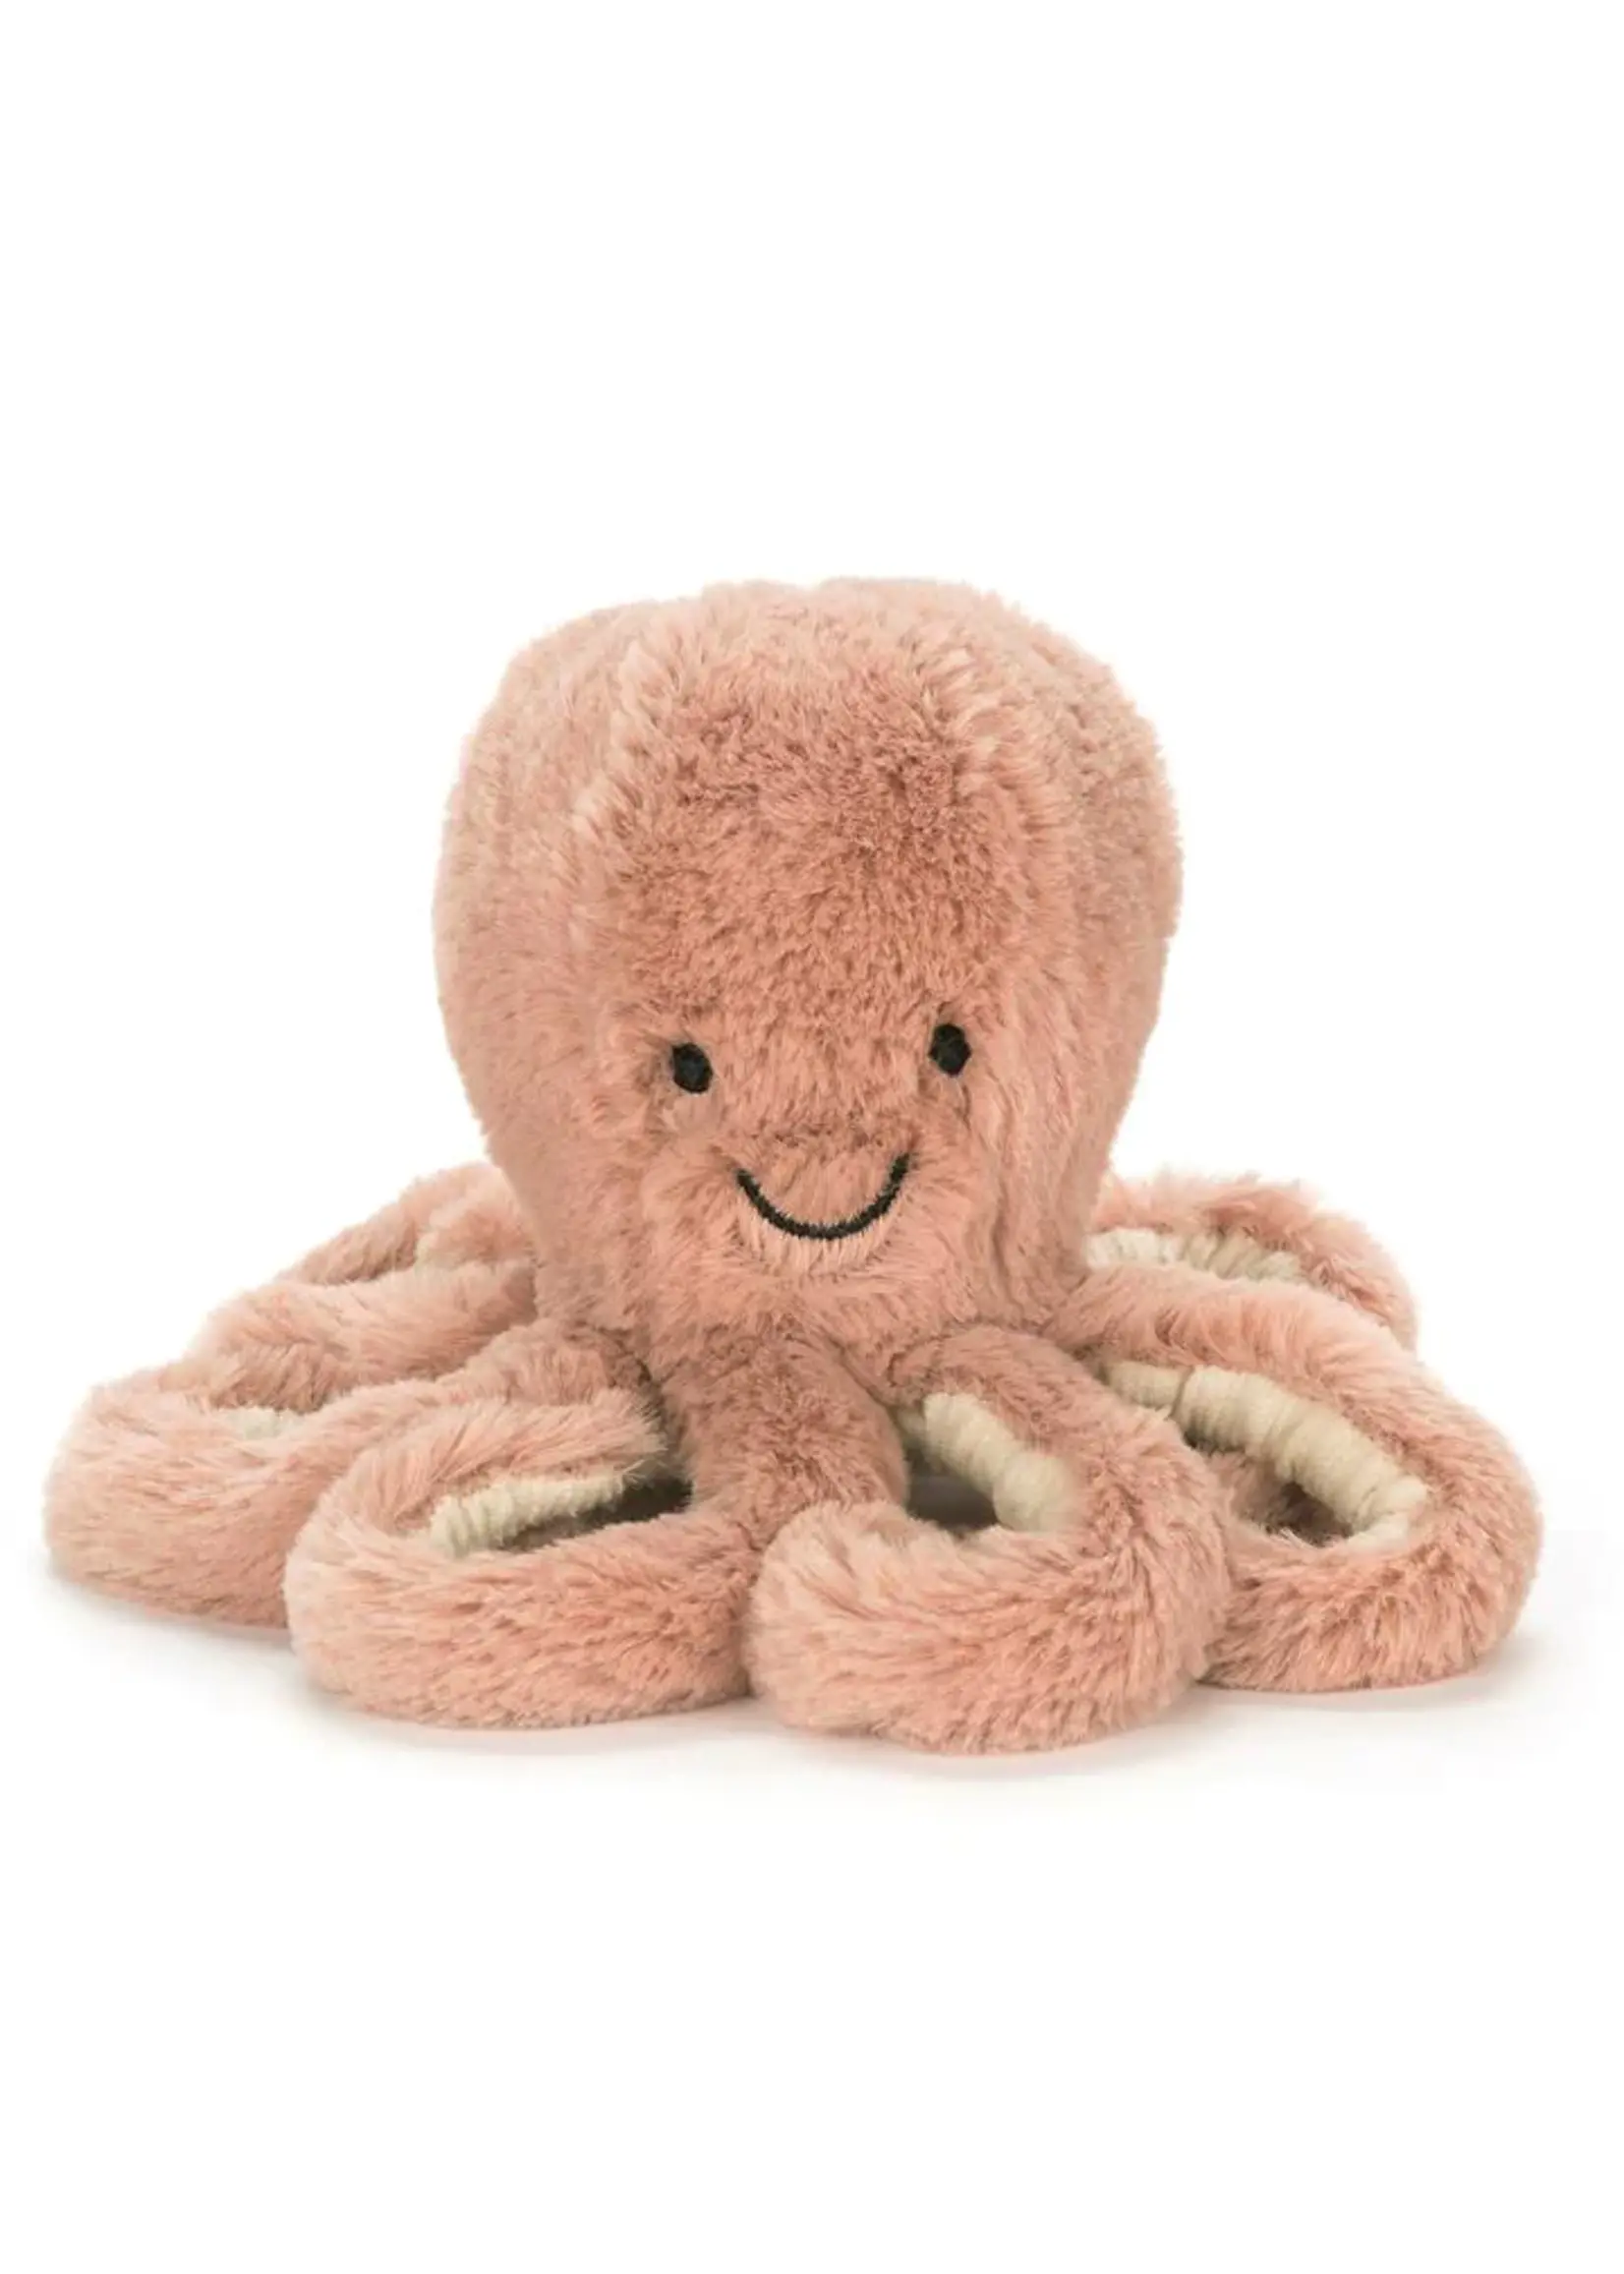 Jellycat Little Odell Octopus